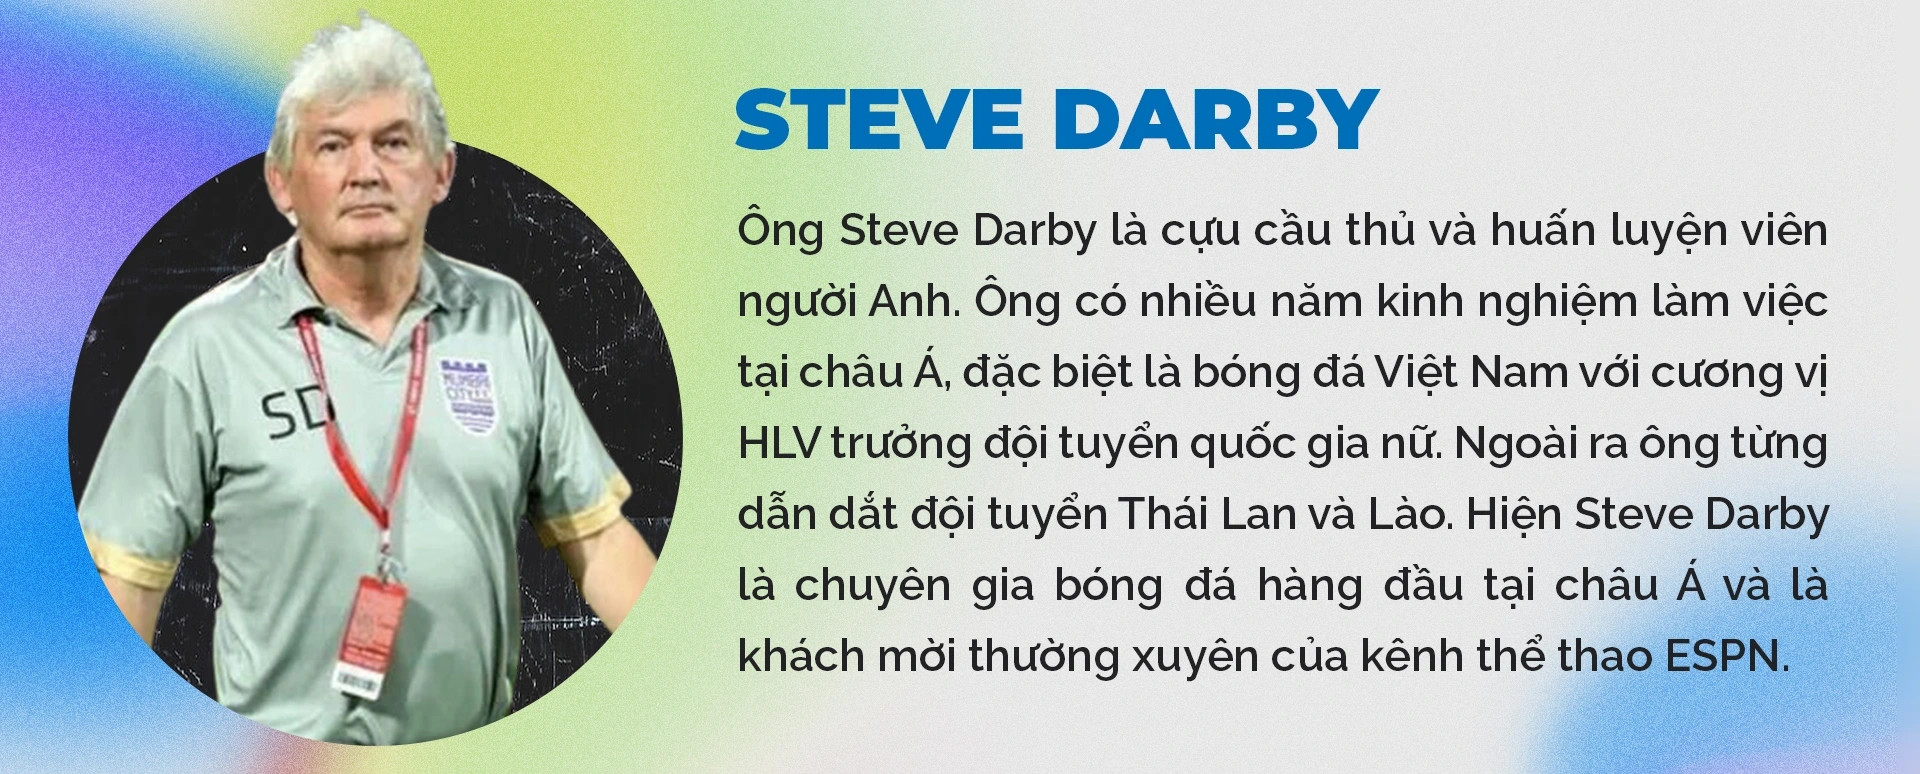 Steve Darby: Đội tuyển nữ Việt Nam có cơ hội giành điểm trước Bồ Đào Nha - 11